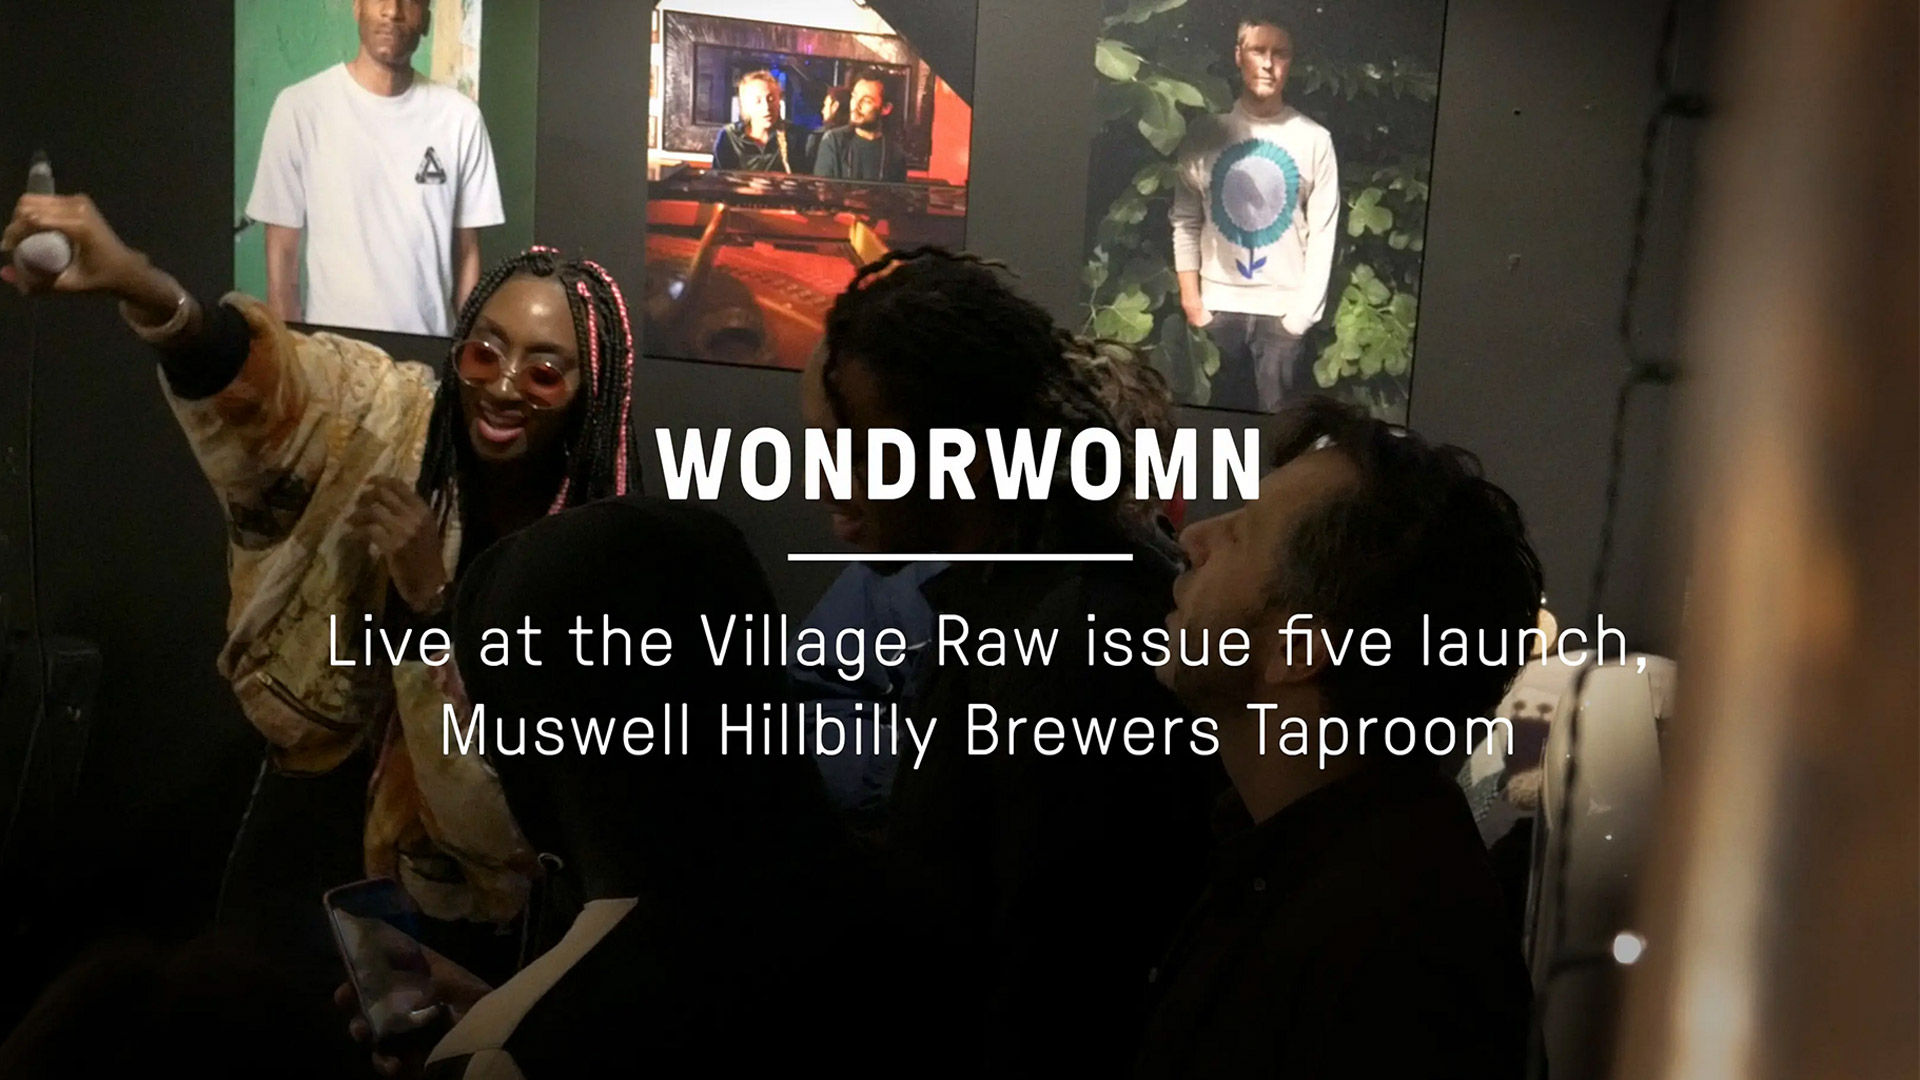 Village Raw - Wondrwomn Video